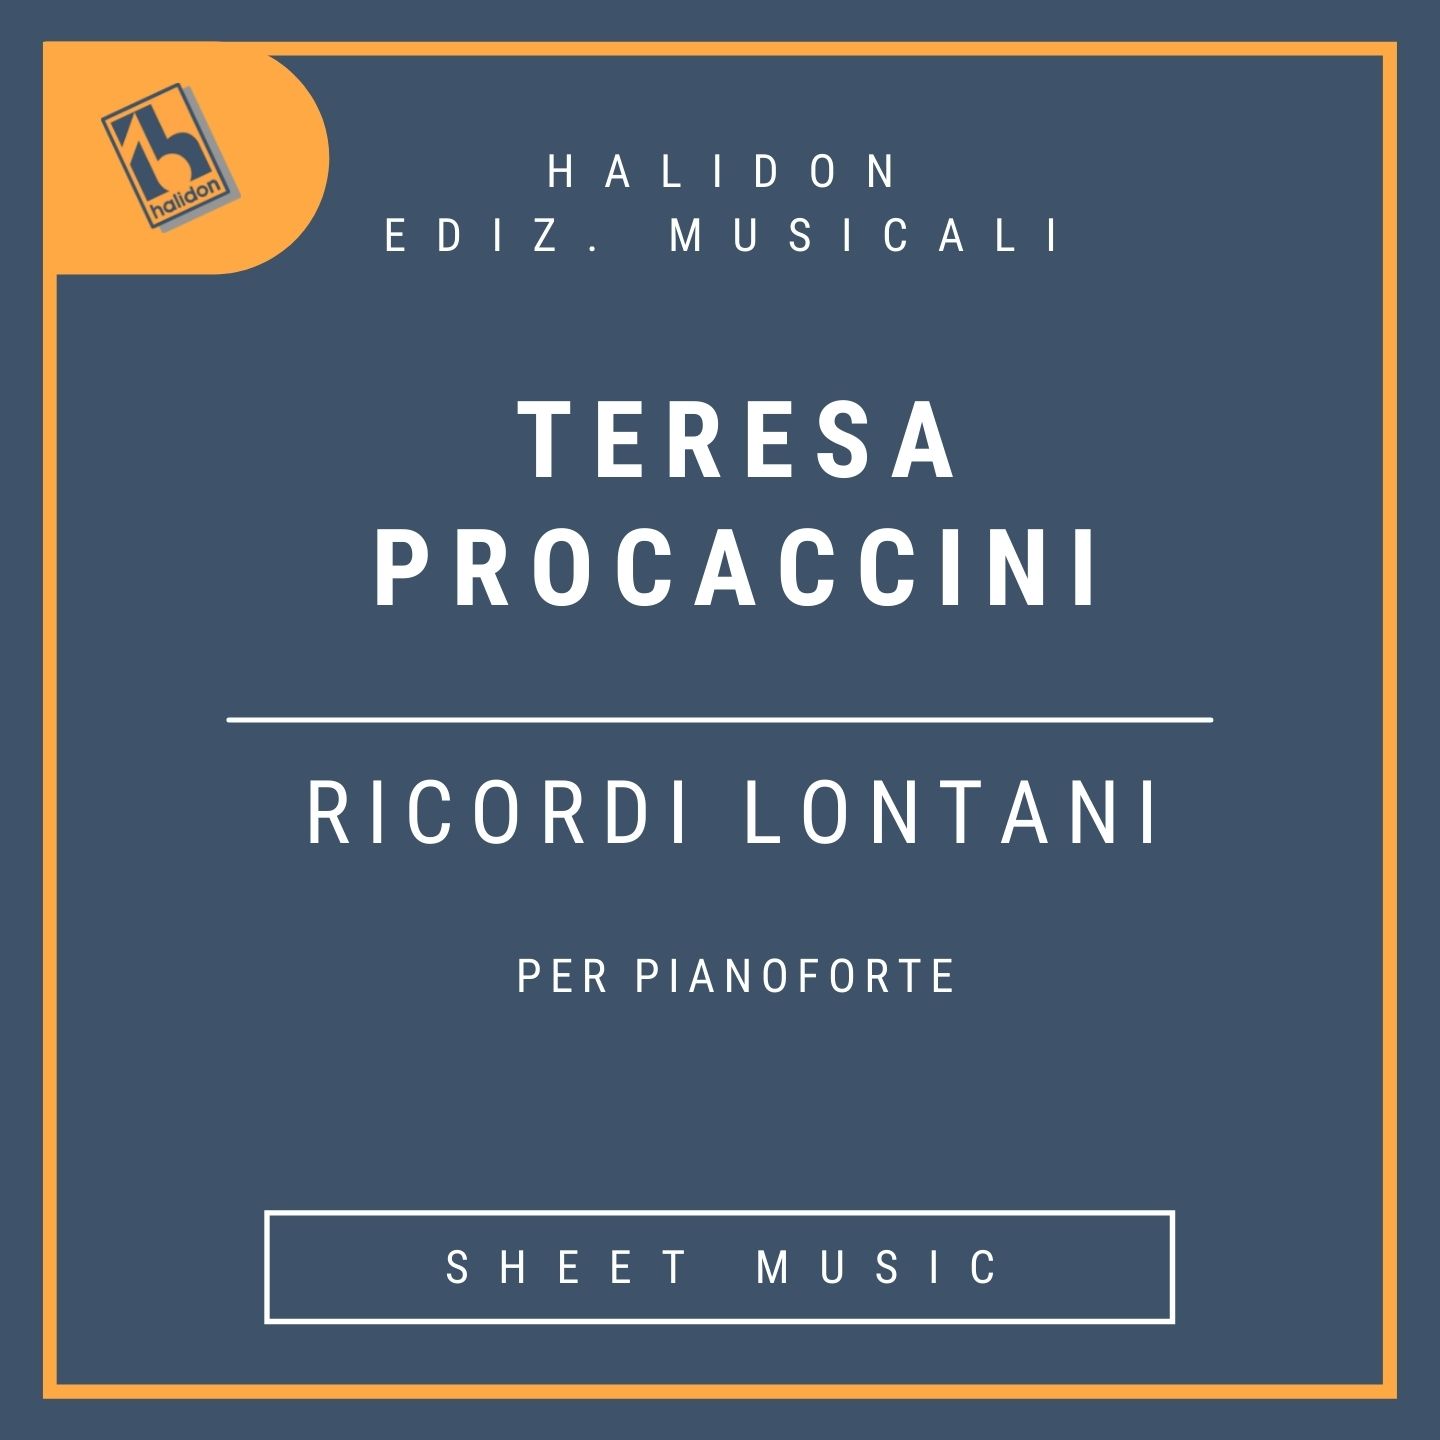 Teresa Procaccini - Ricordi lontani